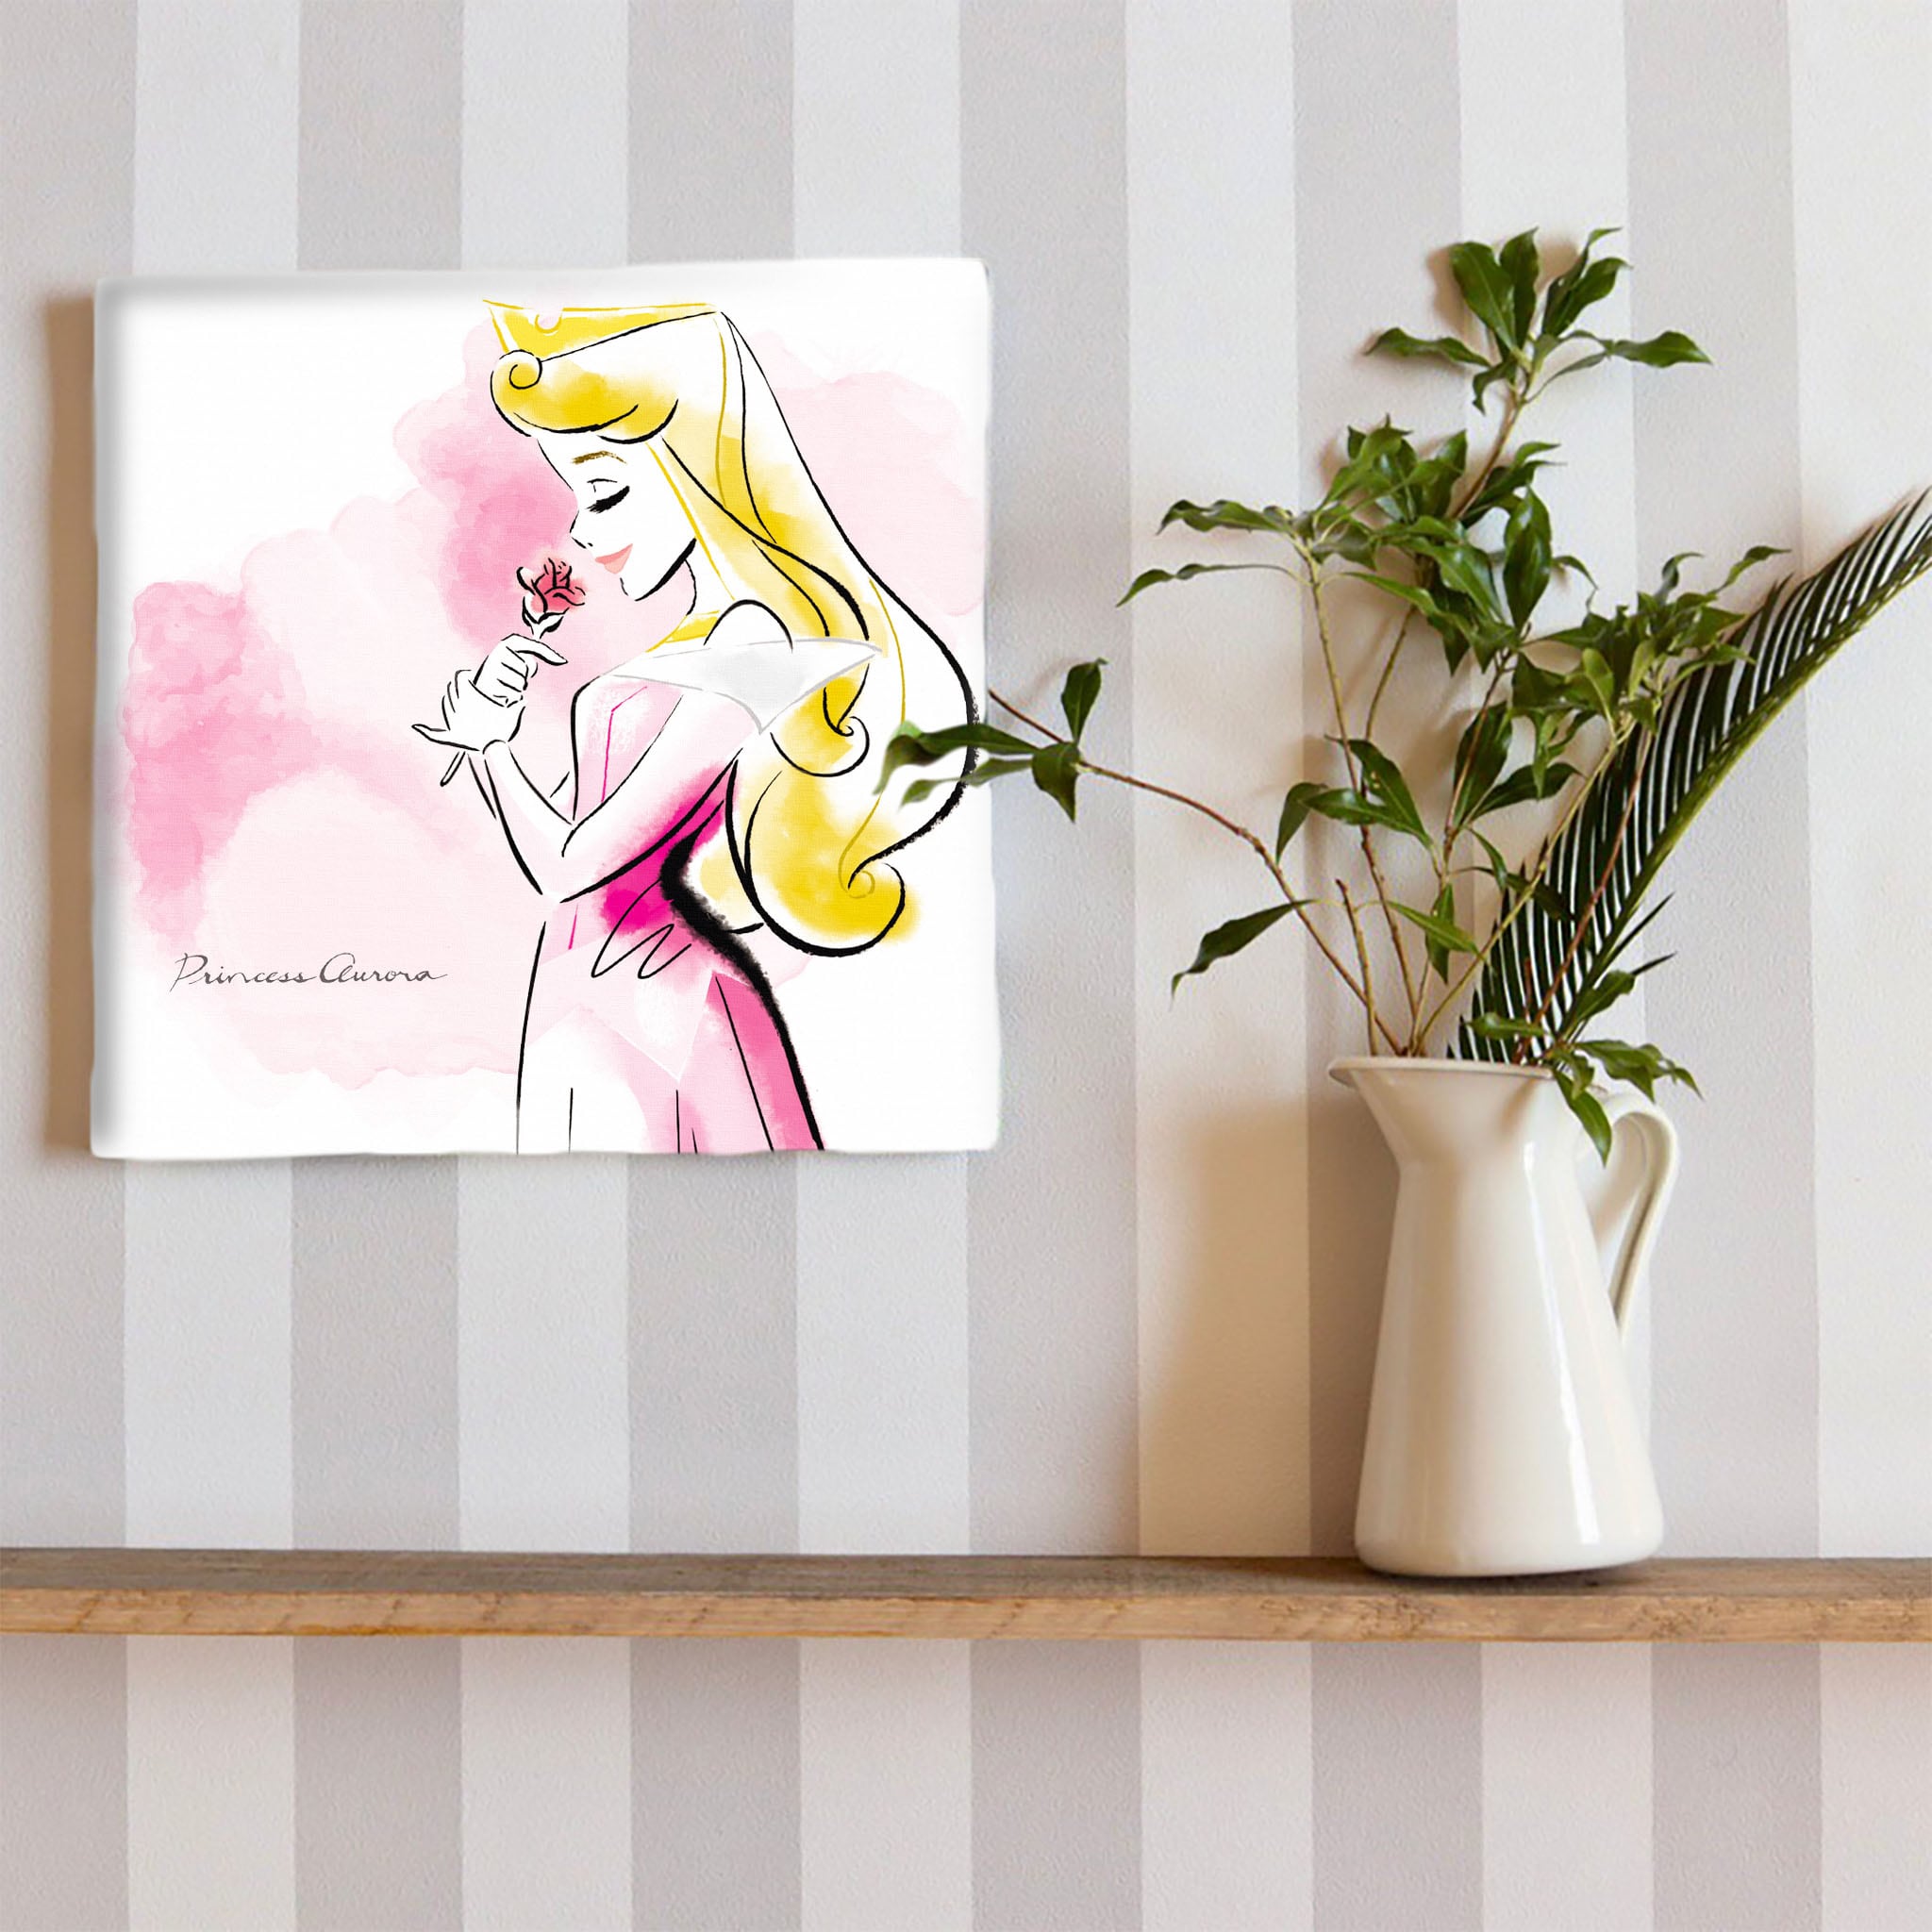 オーロラ姫の壁掛けアート インテリア雑貨 アートパネル キャンバス